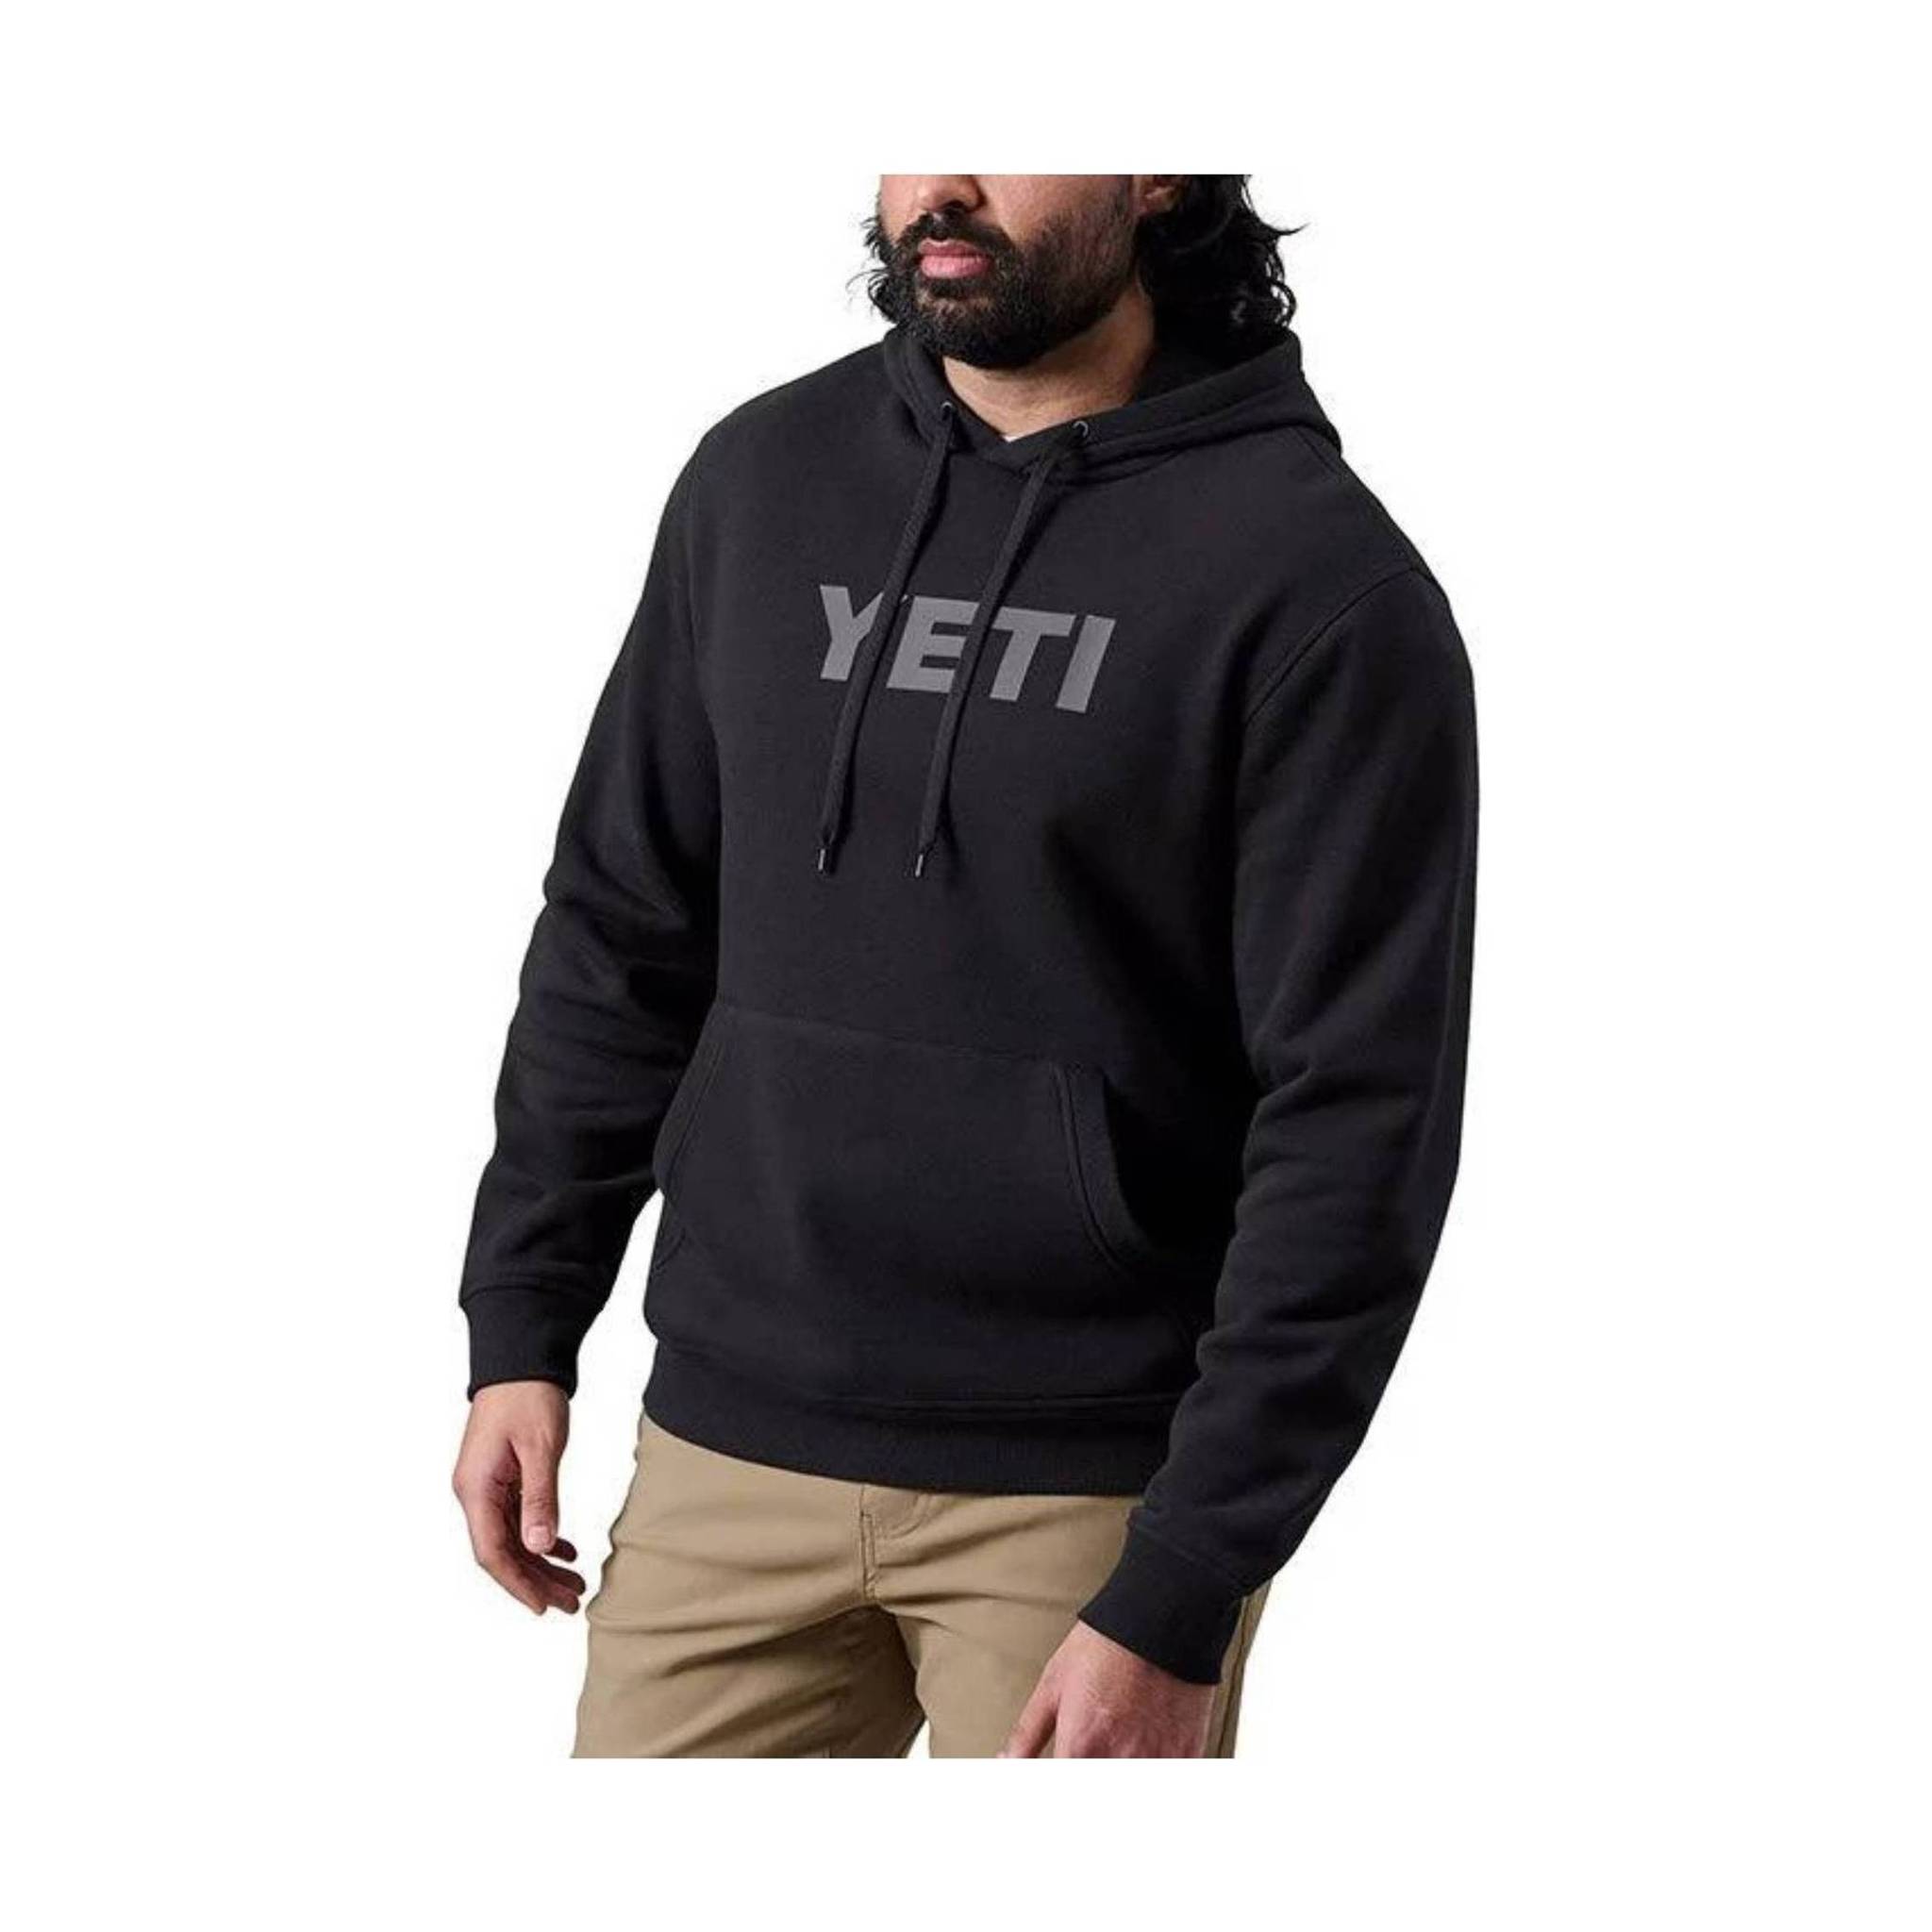 Yeti Men's Brushed Fleece Logo Pullover Hoodie - Black M / Black